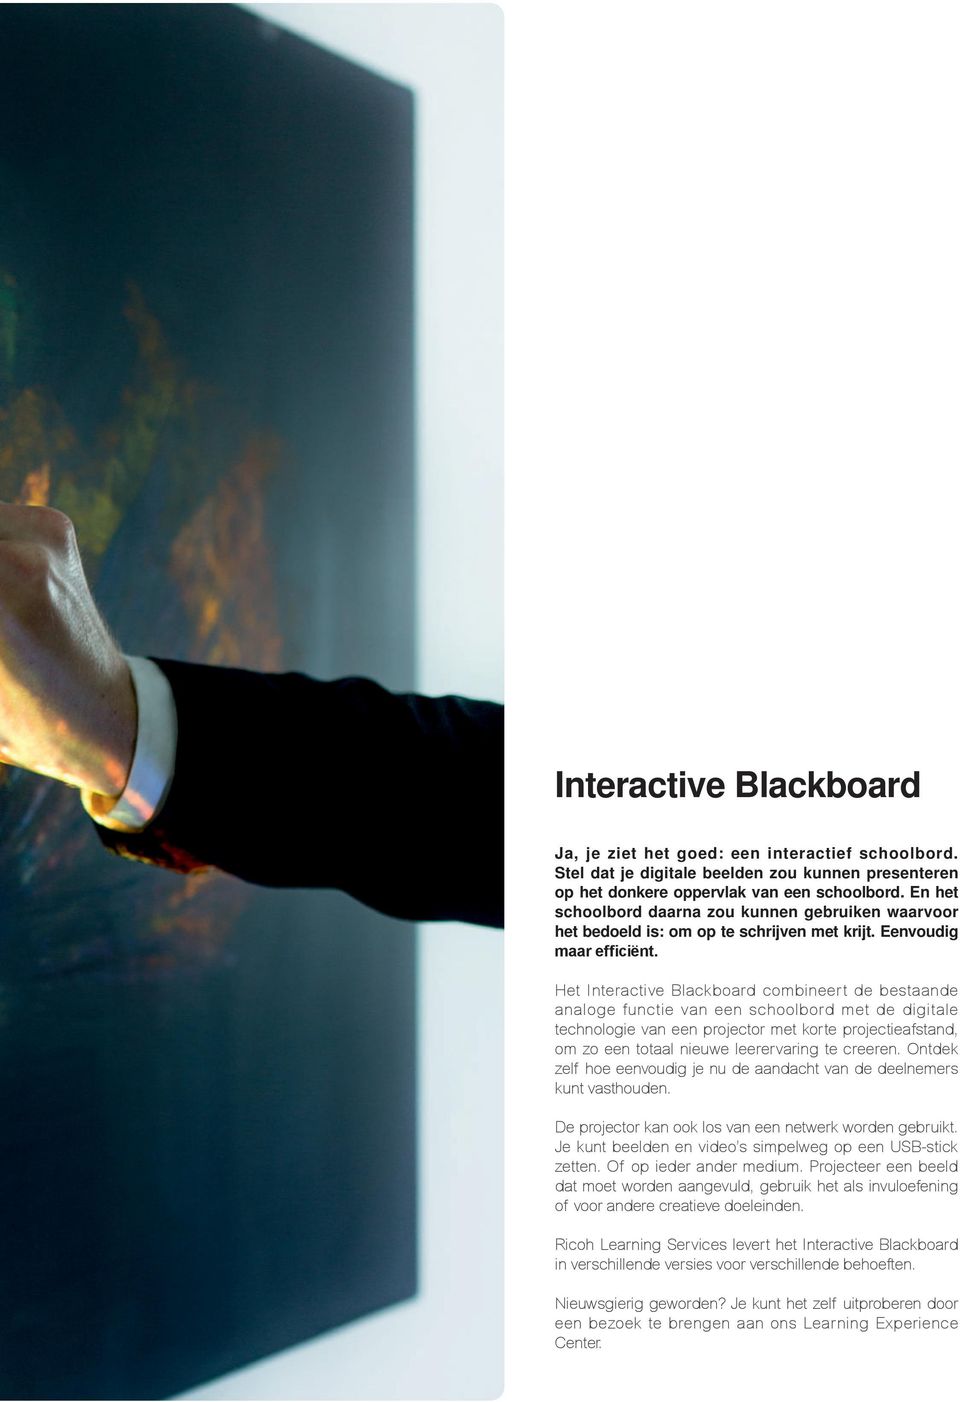 Het Interactive Blackboard combineert de bestaande analoge functie van een schoolbord met de digitale technologie van een projector met korte projectieafstand, om zo een totaal nieuwe leerervaring te